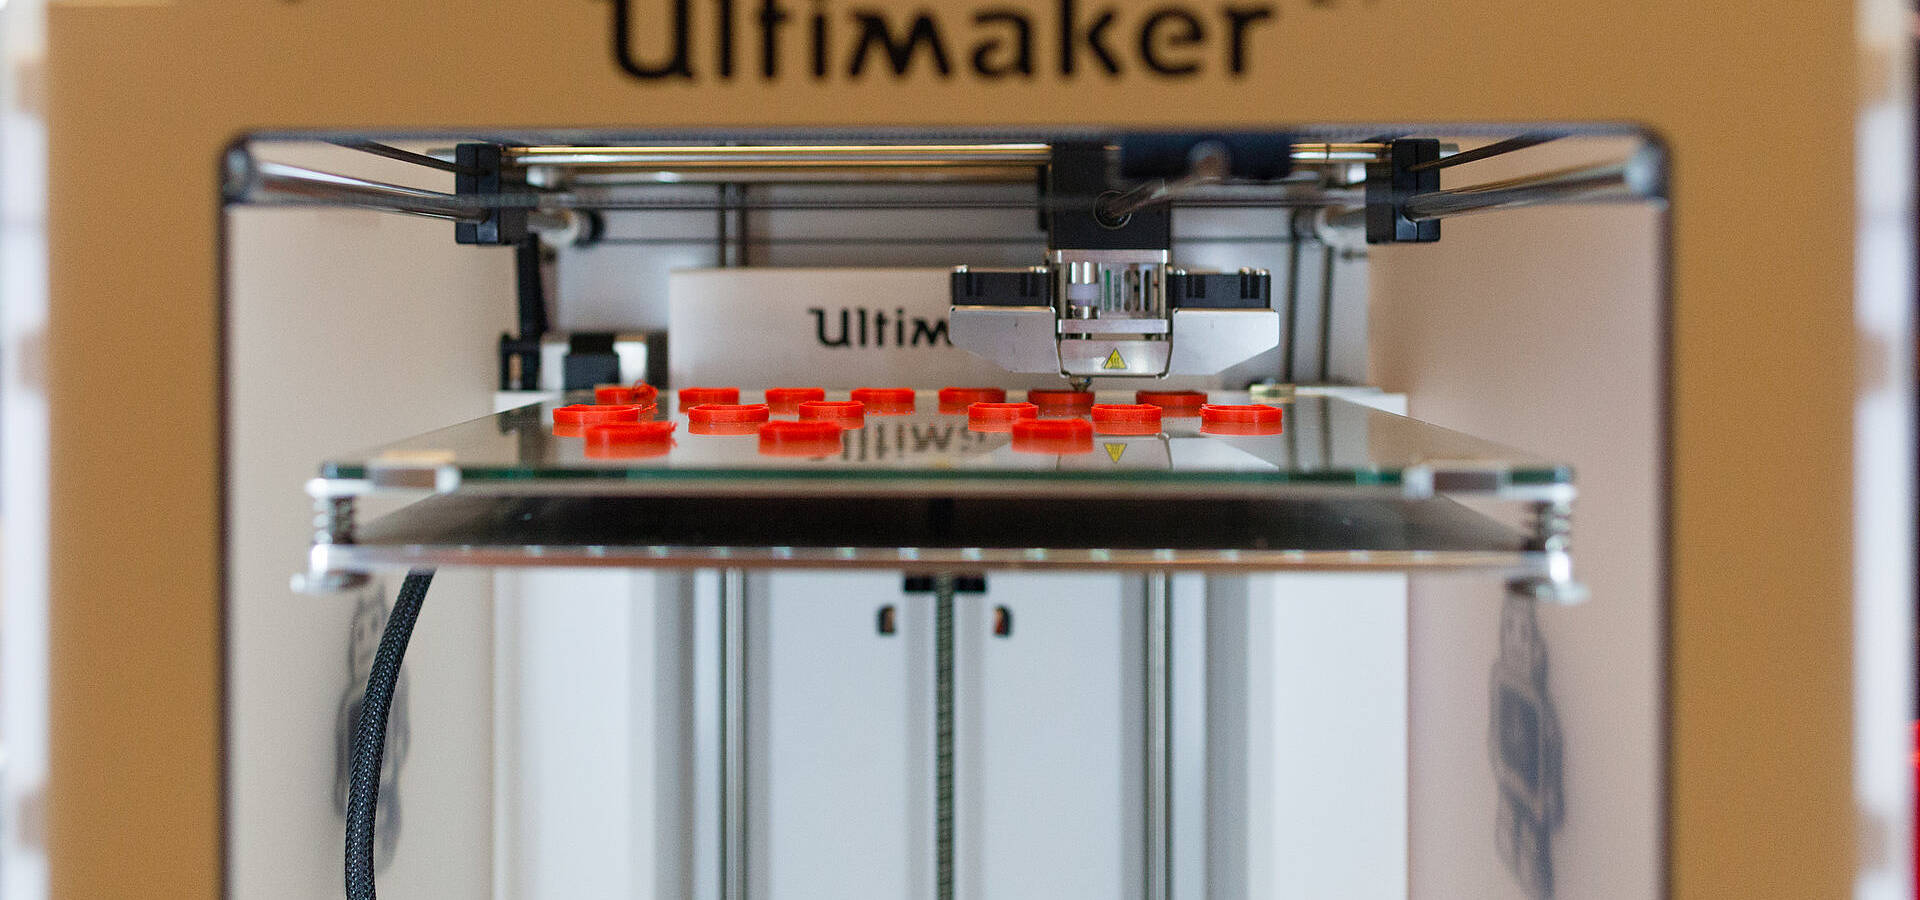 Blick in den Ultimaker, ein technisches Gerät für 3D-Druck